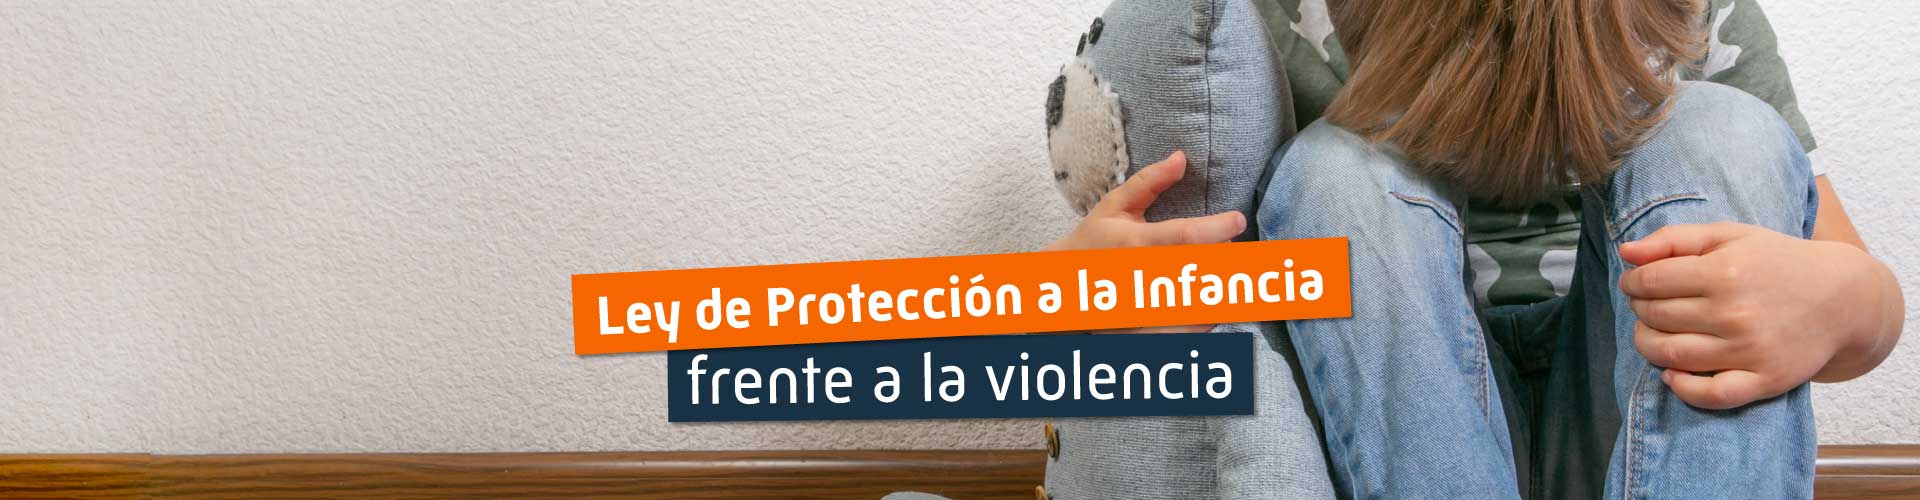 Ley de protección a la infancia frente a la violencia